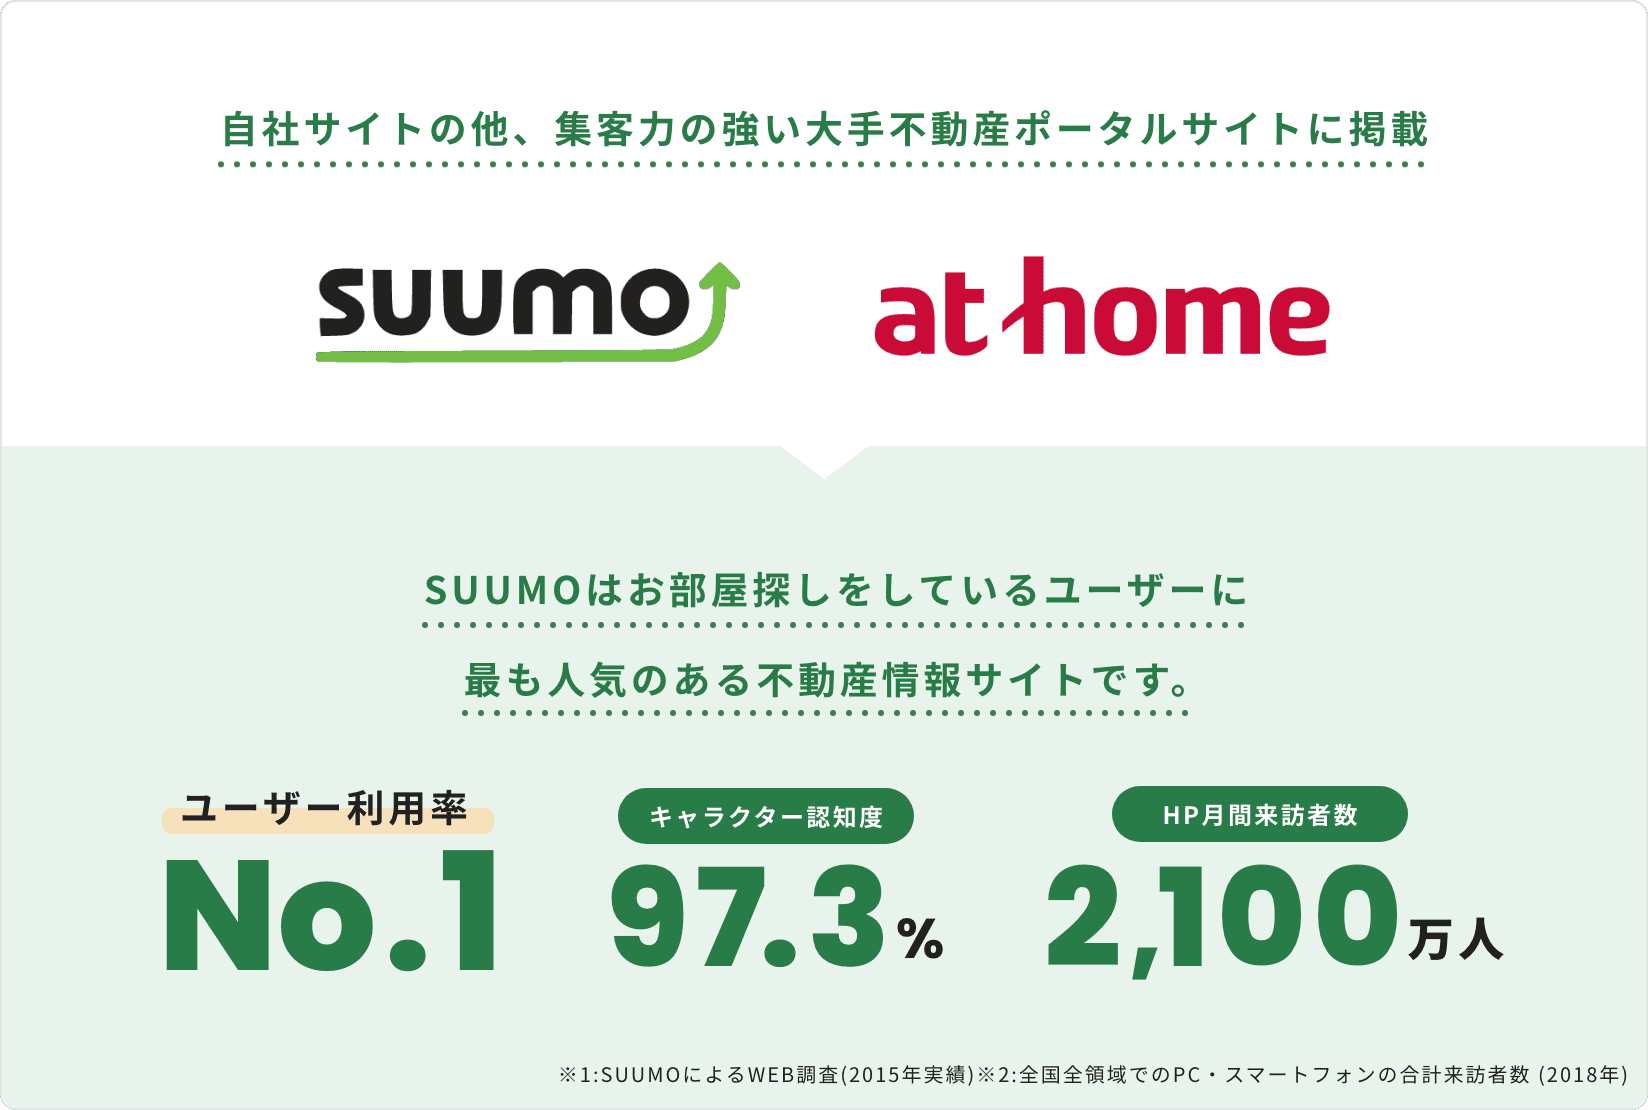 自社サイトの他、集客力の強い大手不動産ポータルサイトに掲載、SUUMOはお部屋探しをしているユーザーに	最も人気のある不動産情報サイトです。ユーザー利用率No.1・キャラクター認知度97.3%・HP月間来訪者数2,100万人※1:SUUMOによるWEB調査(2015年実績)※2:全国全領域でのPC・スマートフォンの合計来訪者数 (2018年)